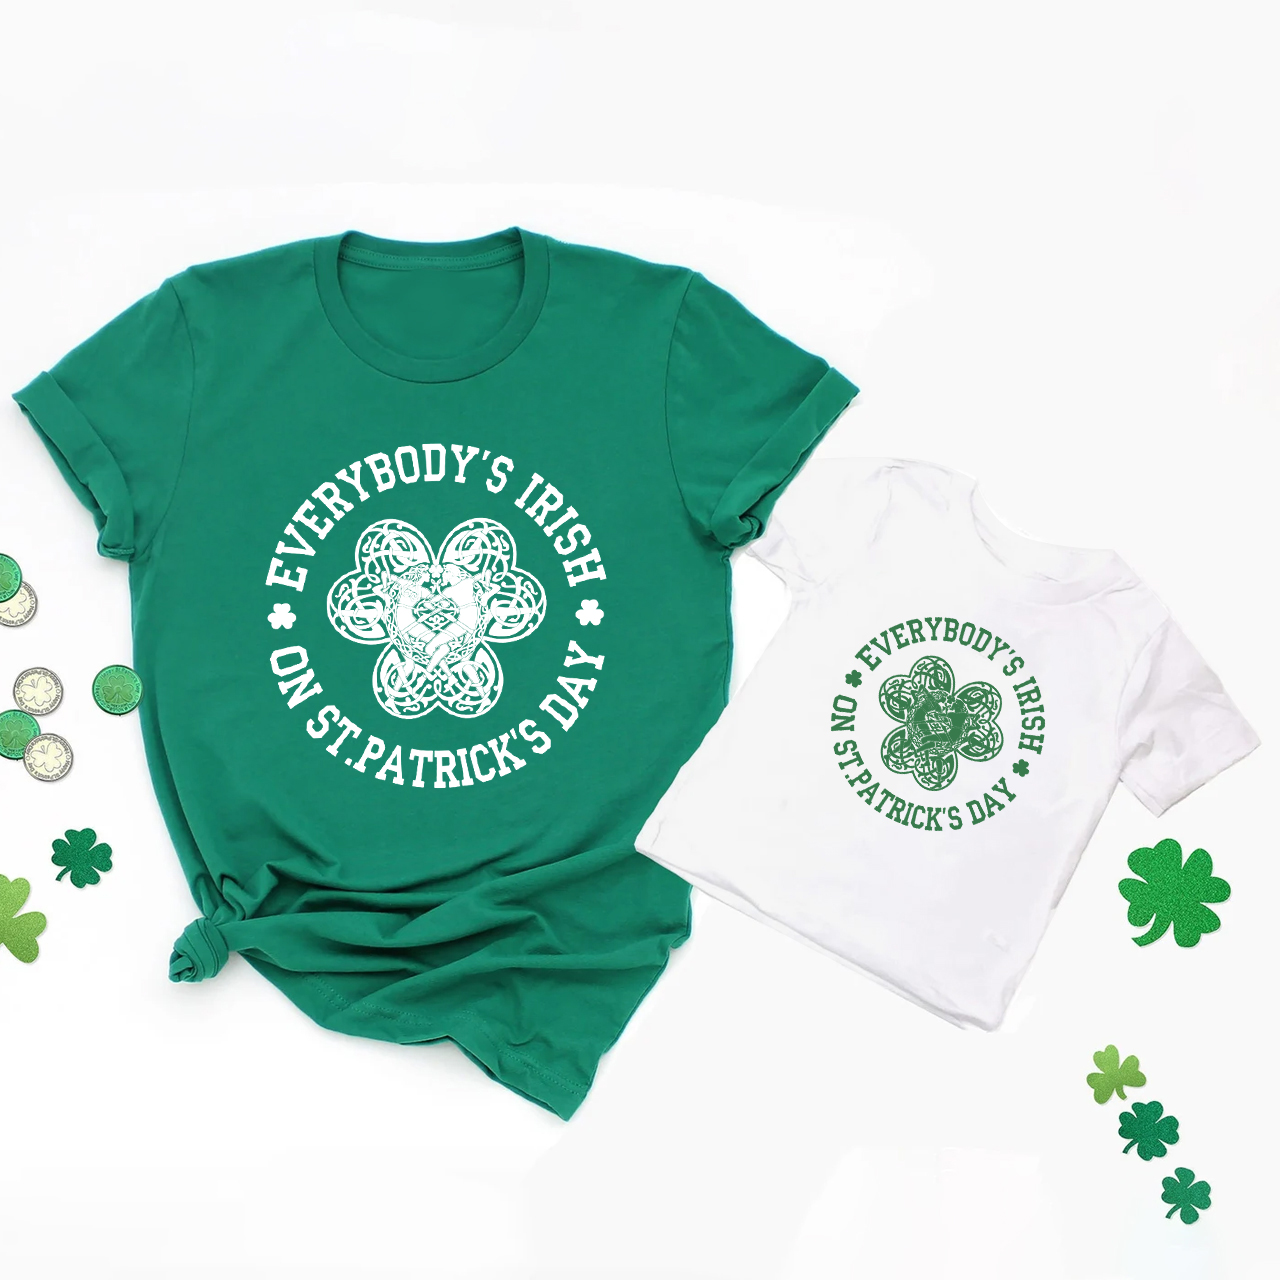 Everybody's Irish St.Patrick's Day Matching Shirts